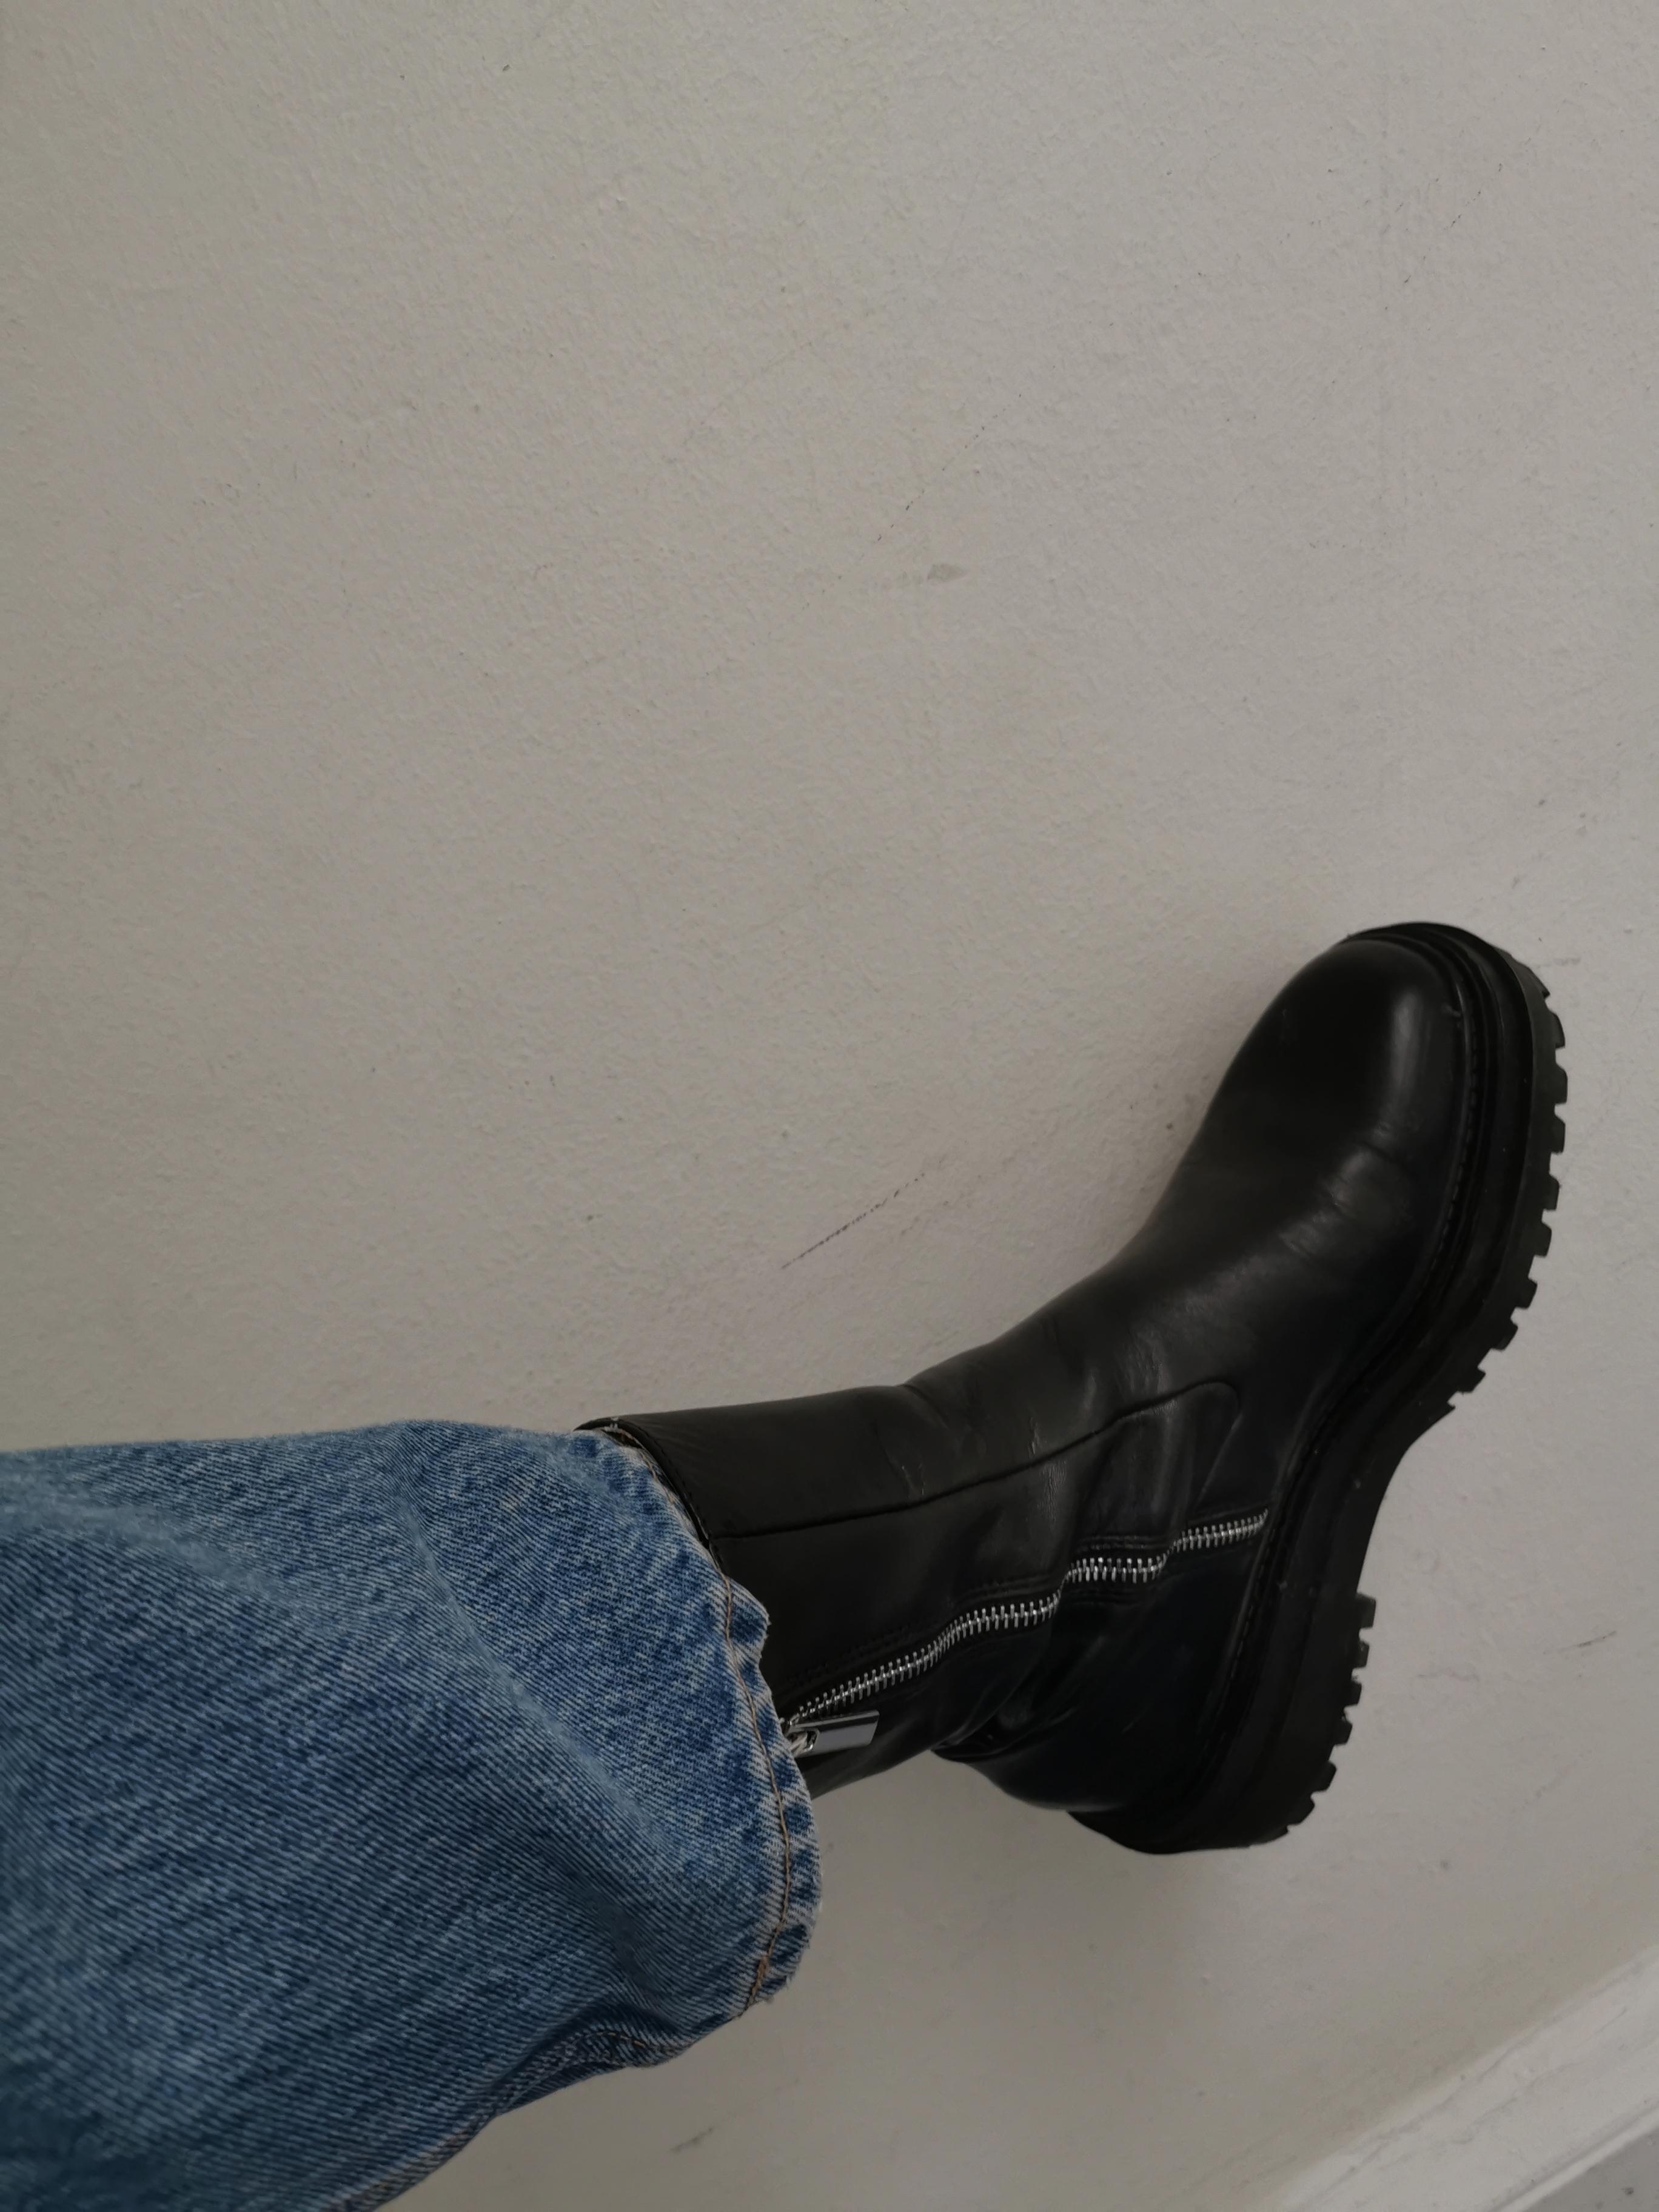 Boots looove 🖤 #herbstlook #boots #chunkyboots #fashion 